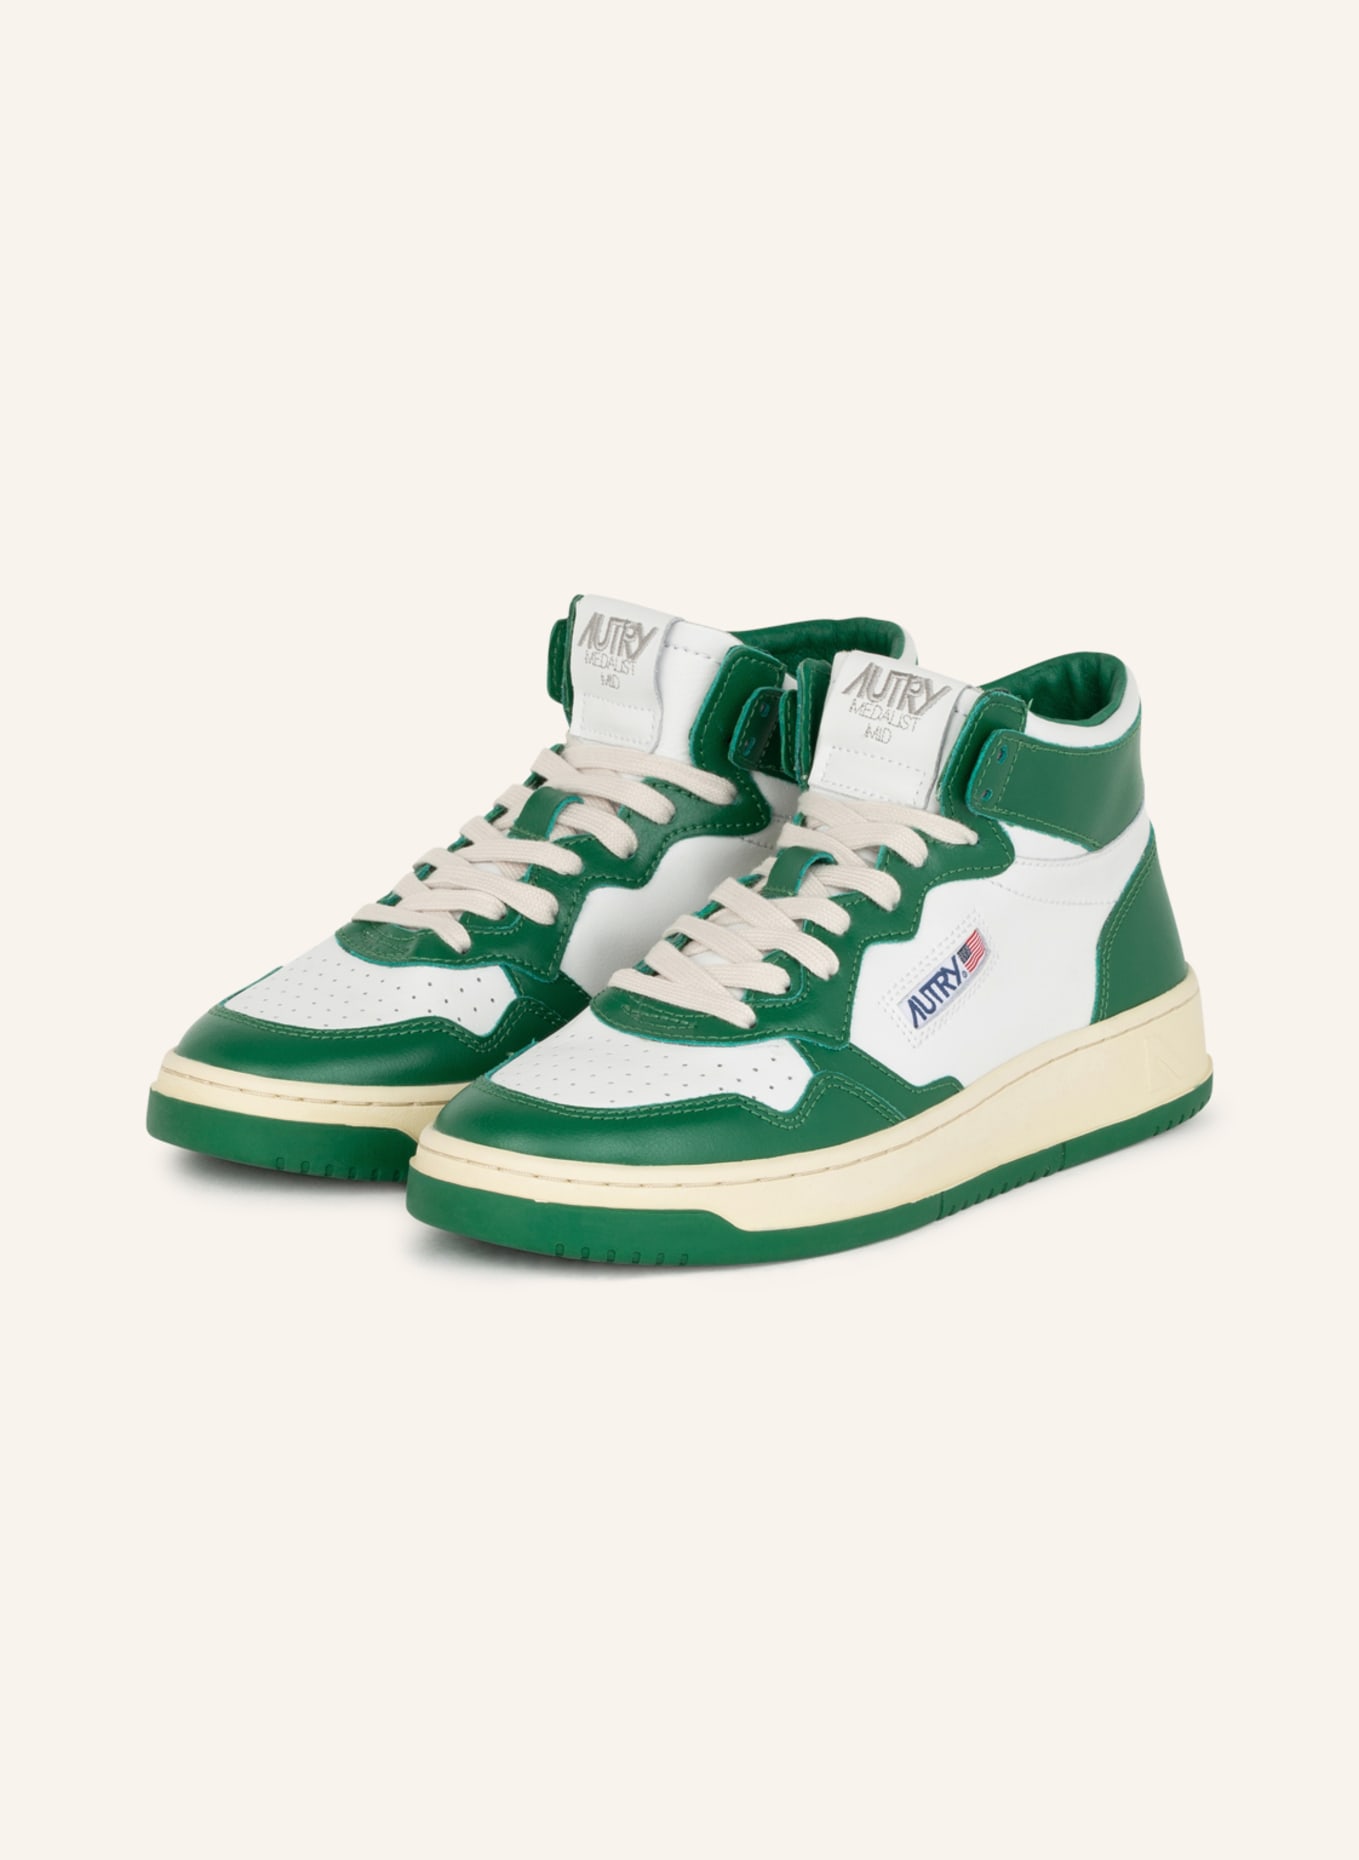 AUTRY Hightop-Sneaker MEDALIST, Farbe: WEISS/ GRÜN (Bild 1)